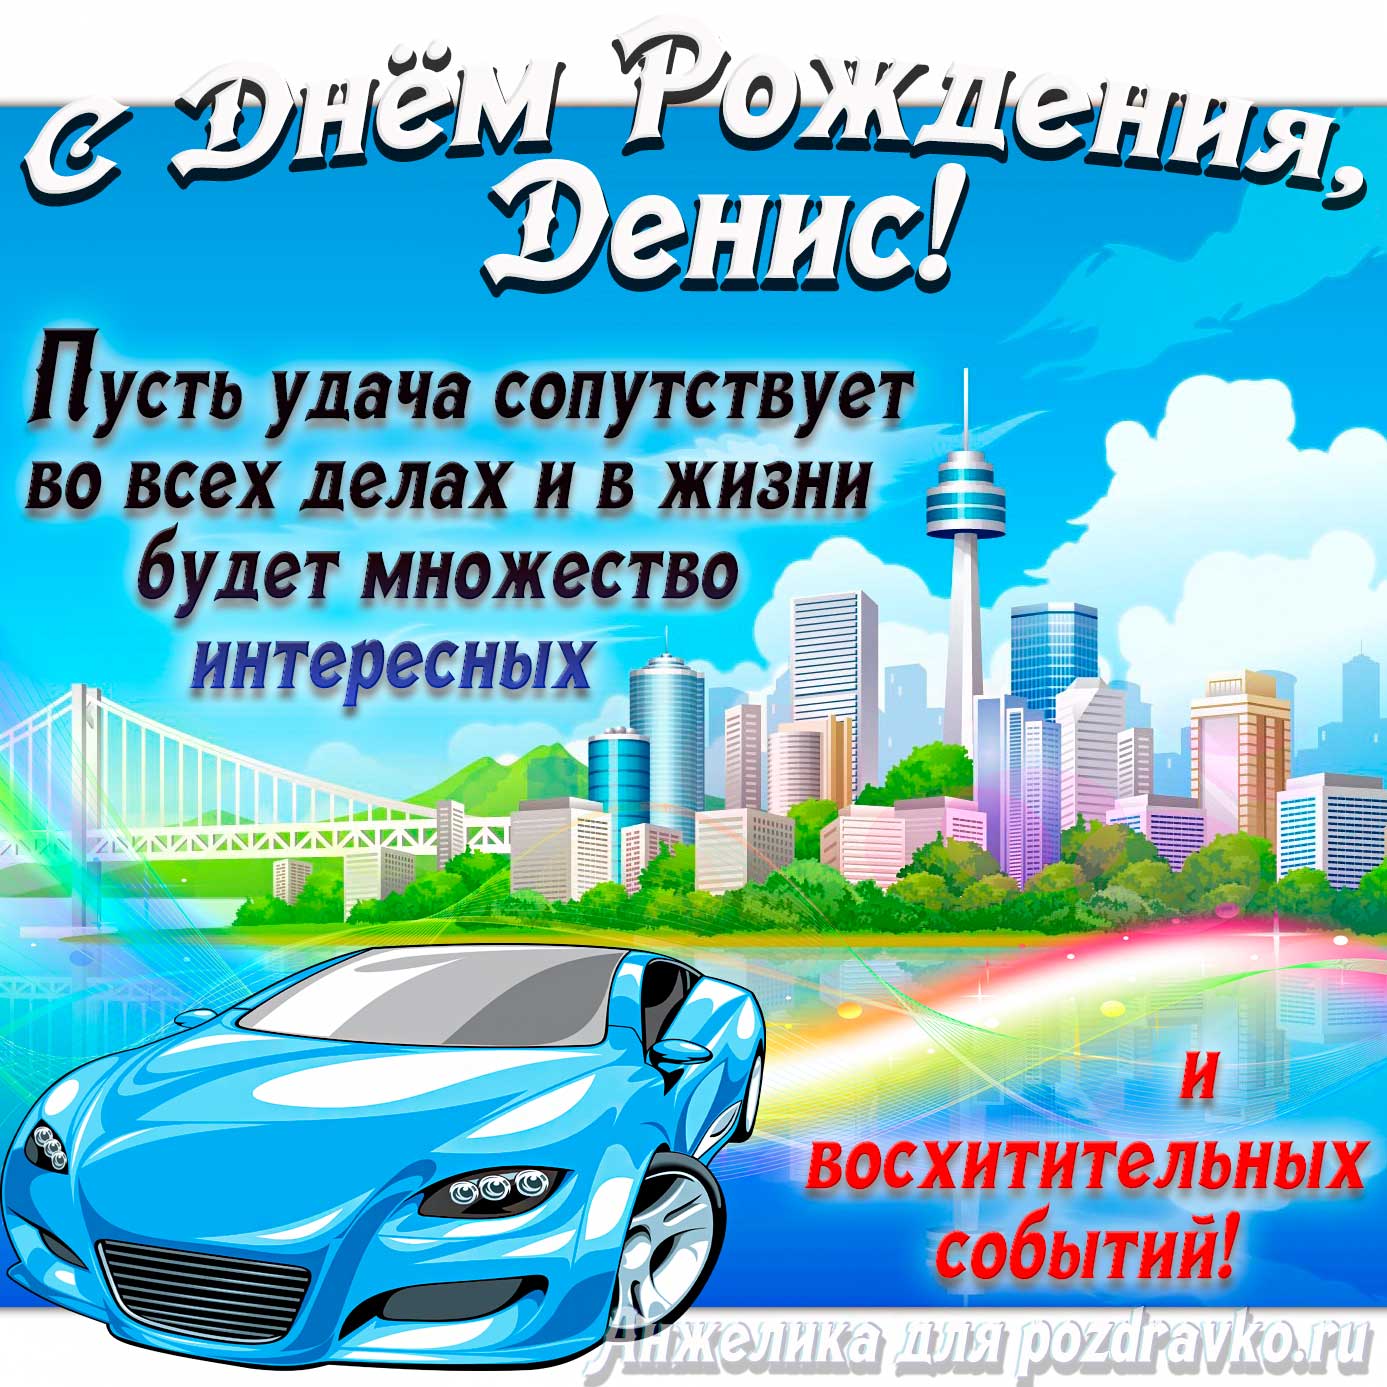 Открытка - с Днём Рождения Денис с голубой машиной и пожеланием. Скачать бесплатно или отправить картинку.